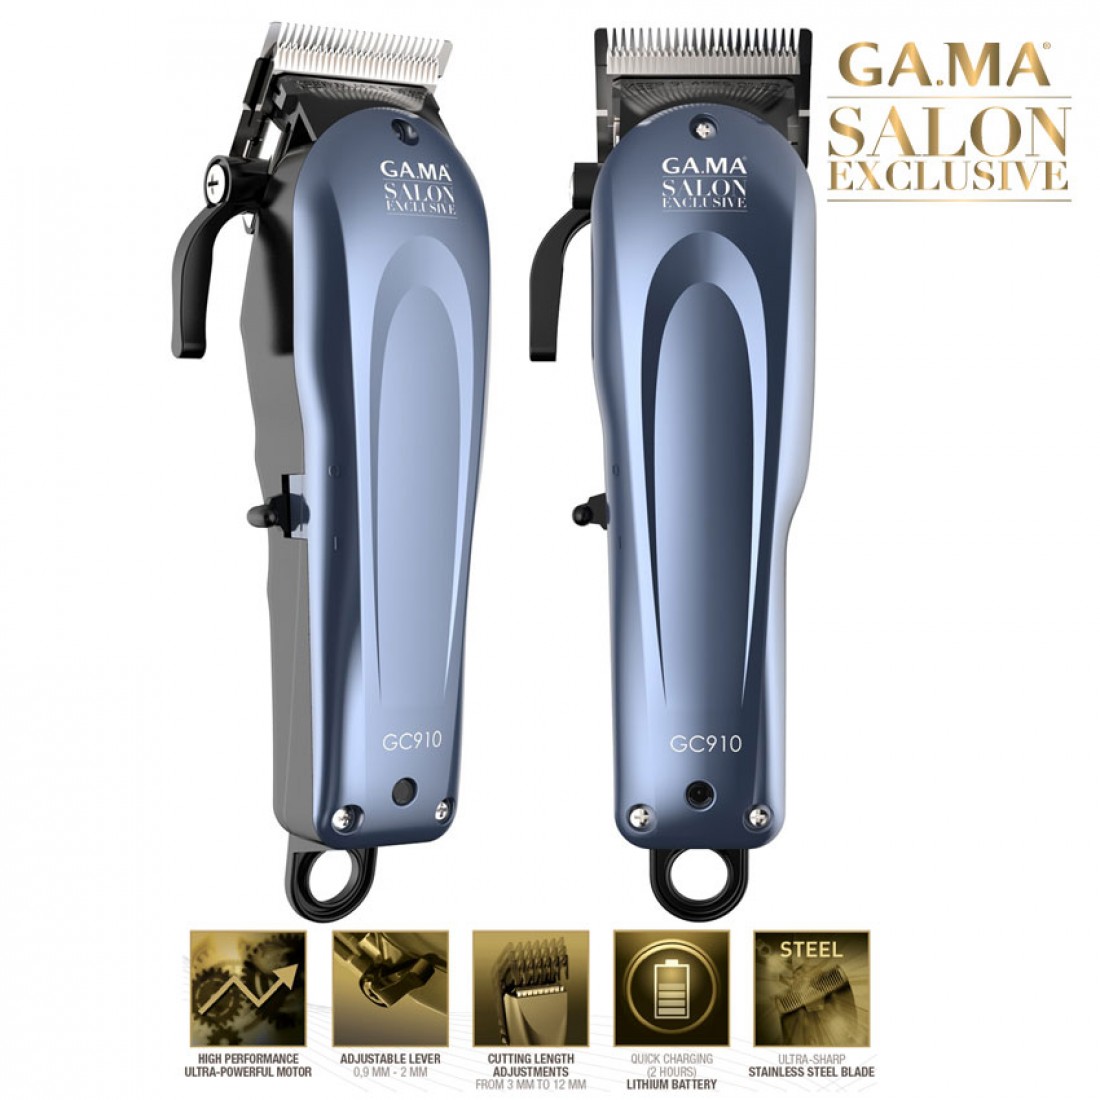 Машинка для стрижки волос gama gc572 пропускает волосы